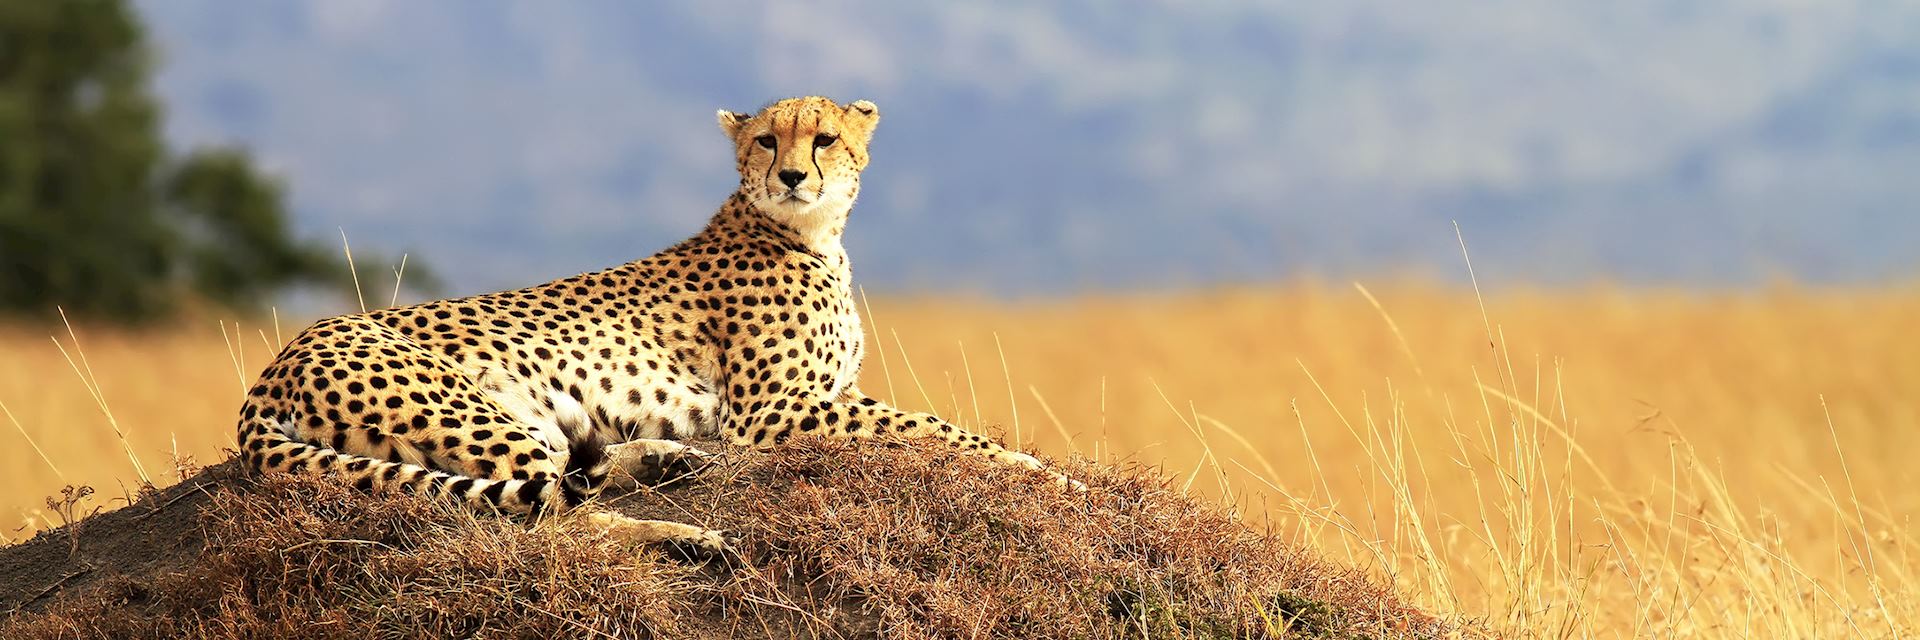 A cheetah in the Masai Mara, Kenya